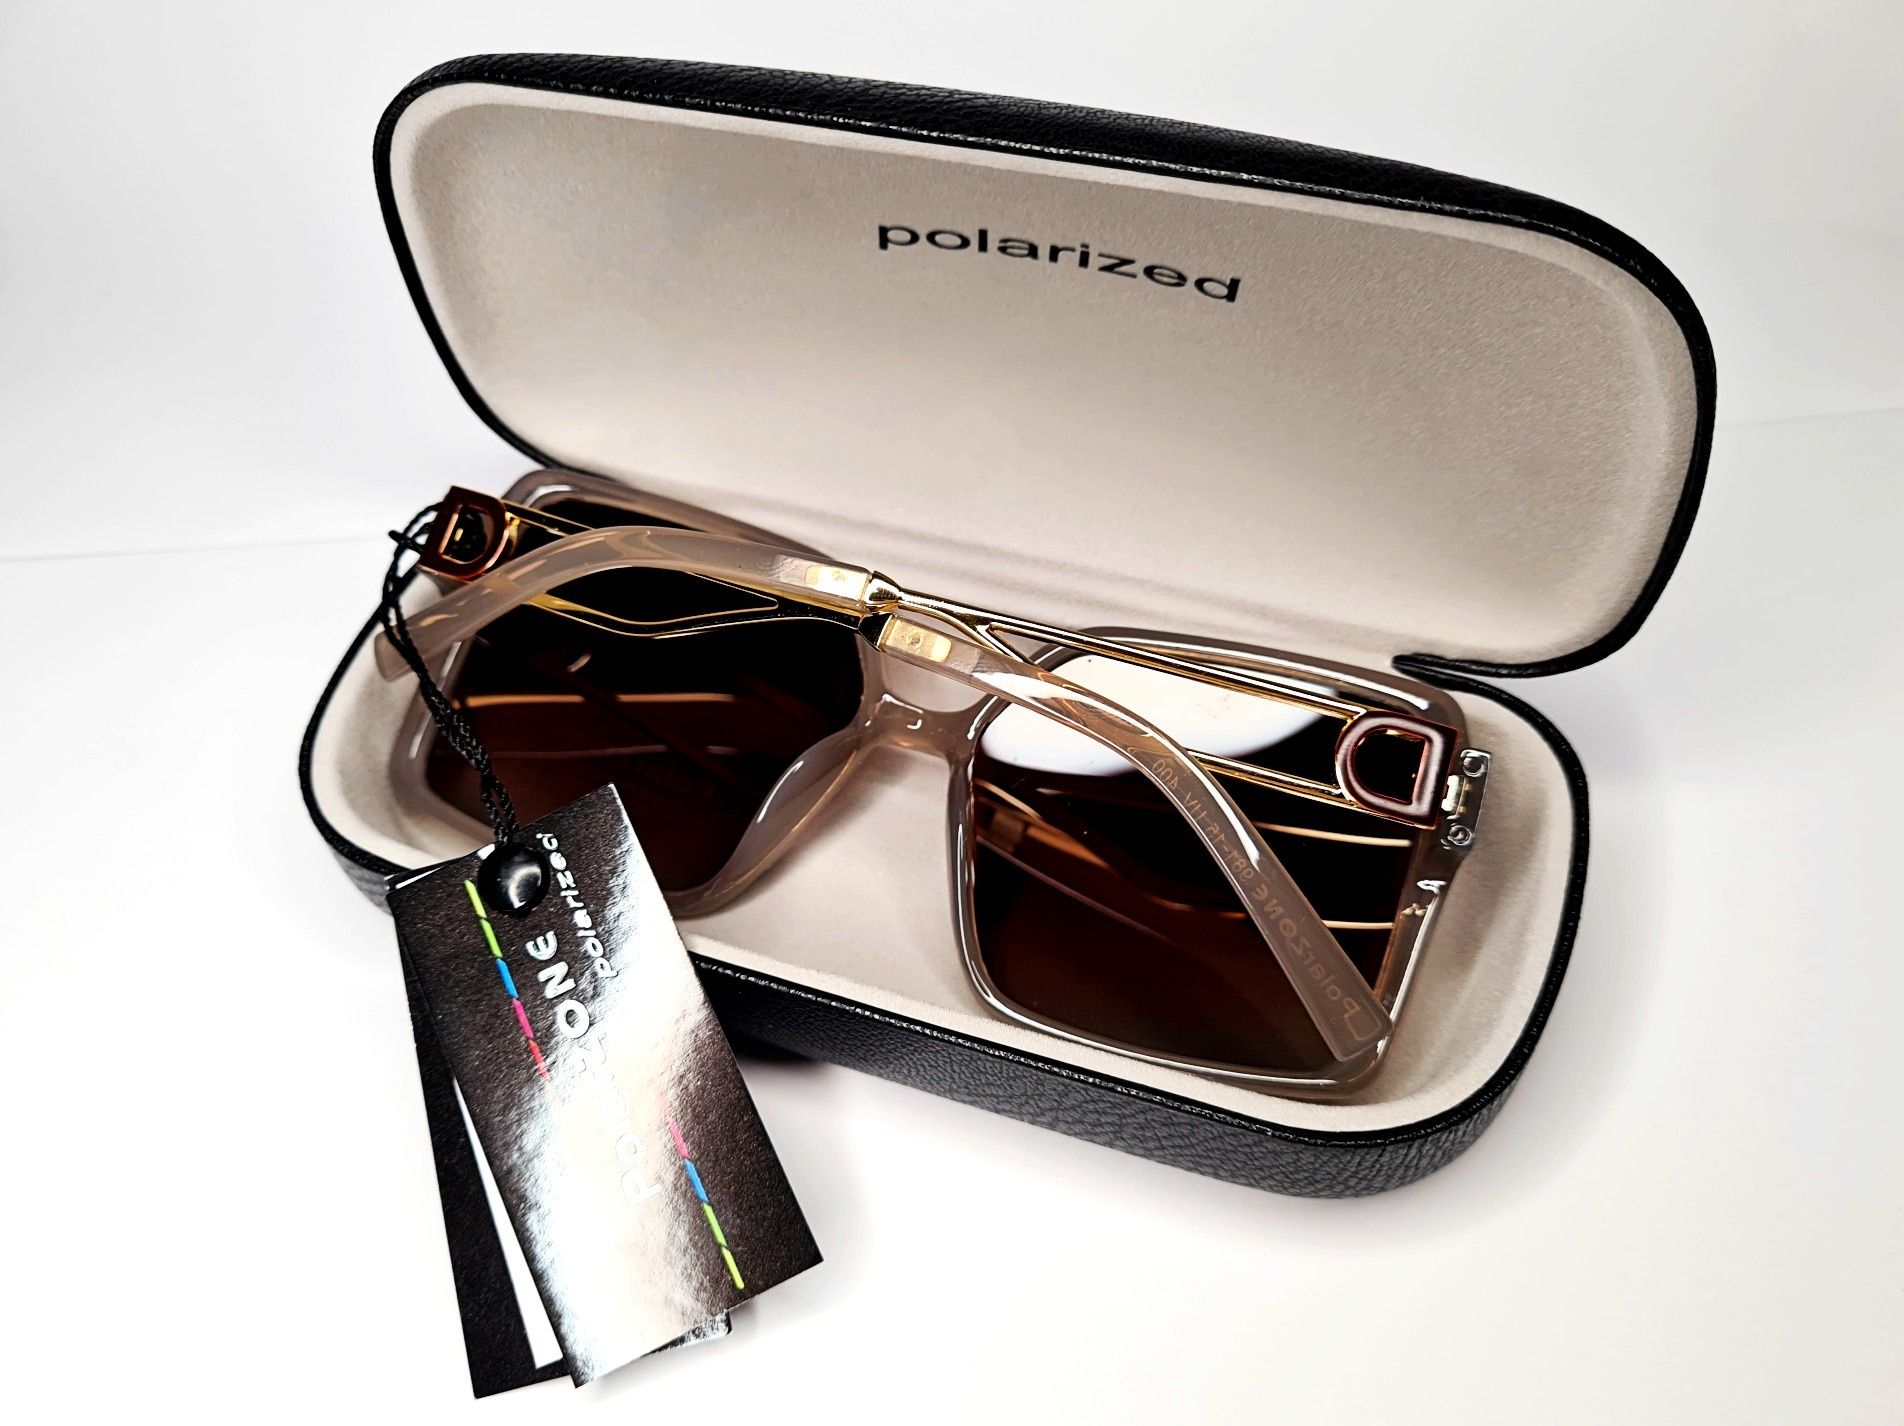 Nowe modne okulary przeciwsłoneczne Polaryzacyjne PolarZONE - moda